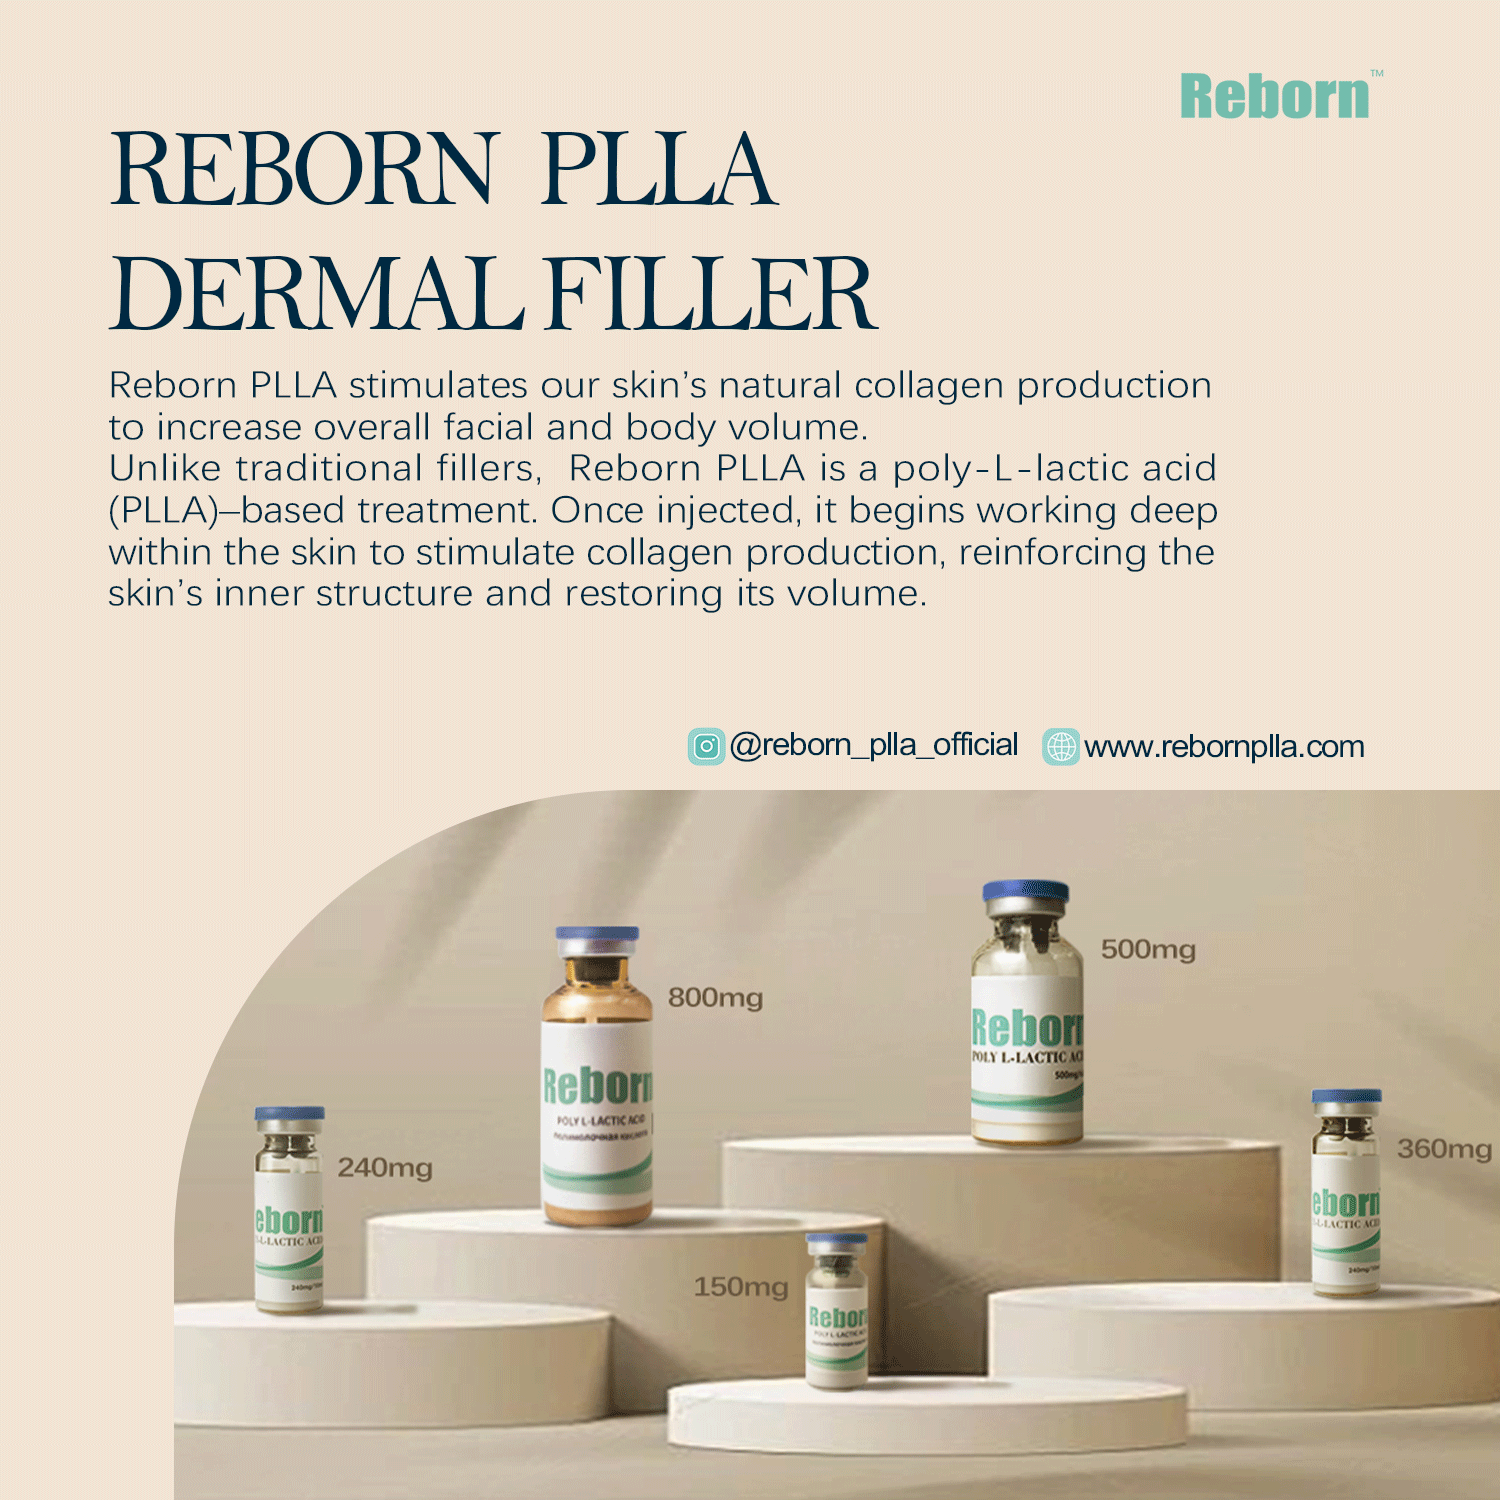 Reborn plla filler for stimulating your own natural collagen